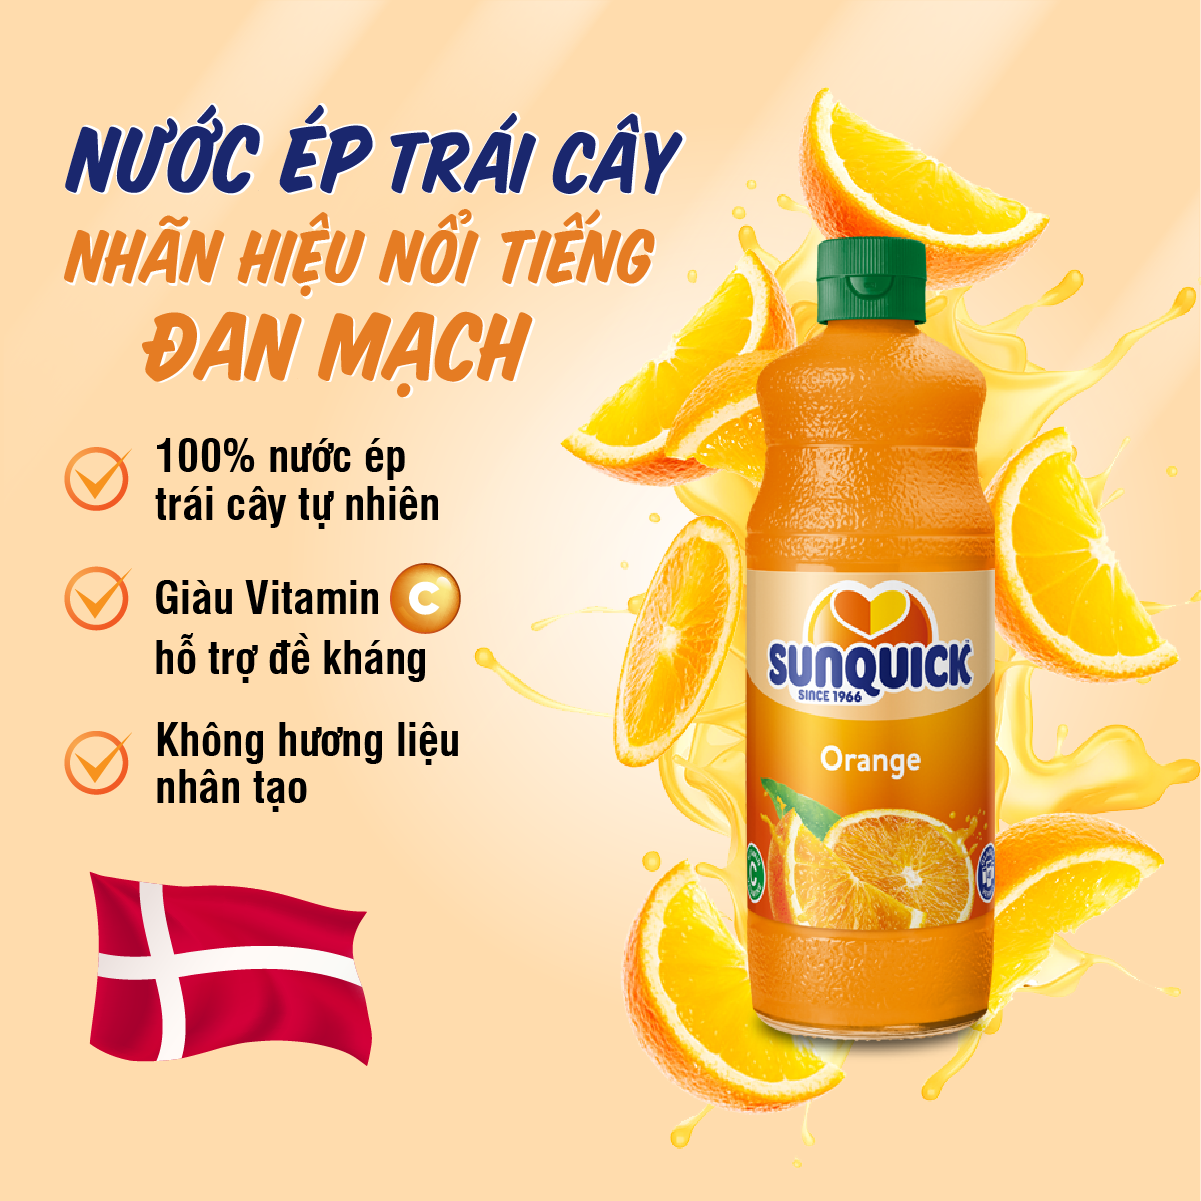 Nước ép cam sunquick orange juice 840ml đẹp da tốt cho sức khỏe - ảnh sản phẩm 2